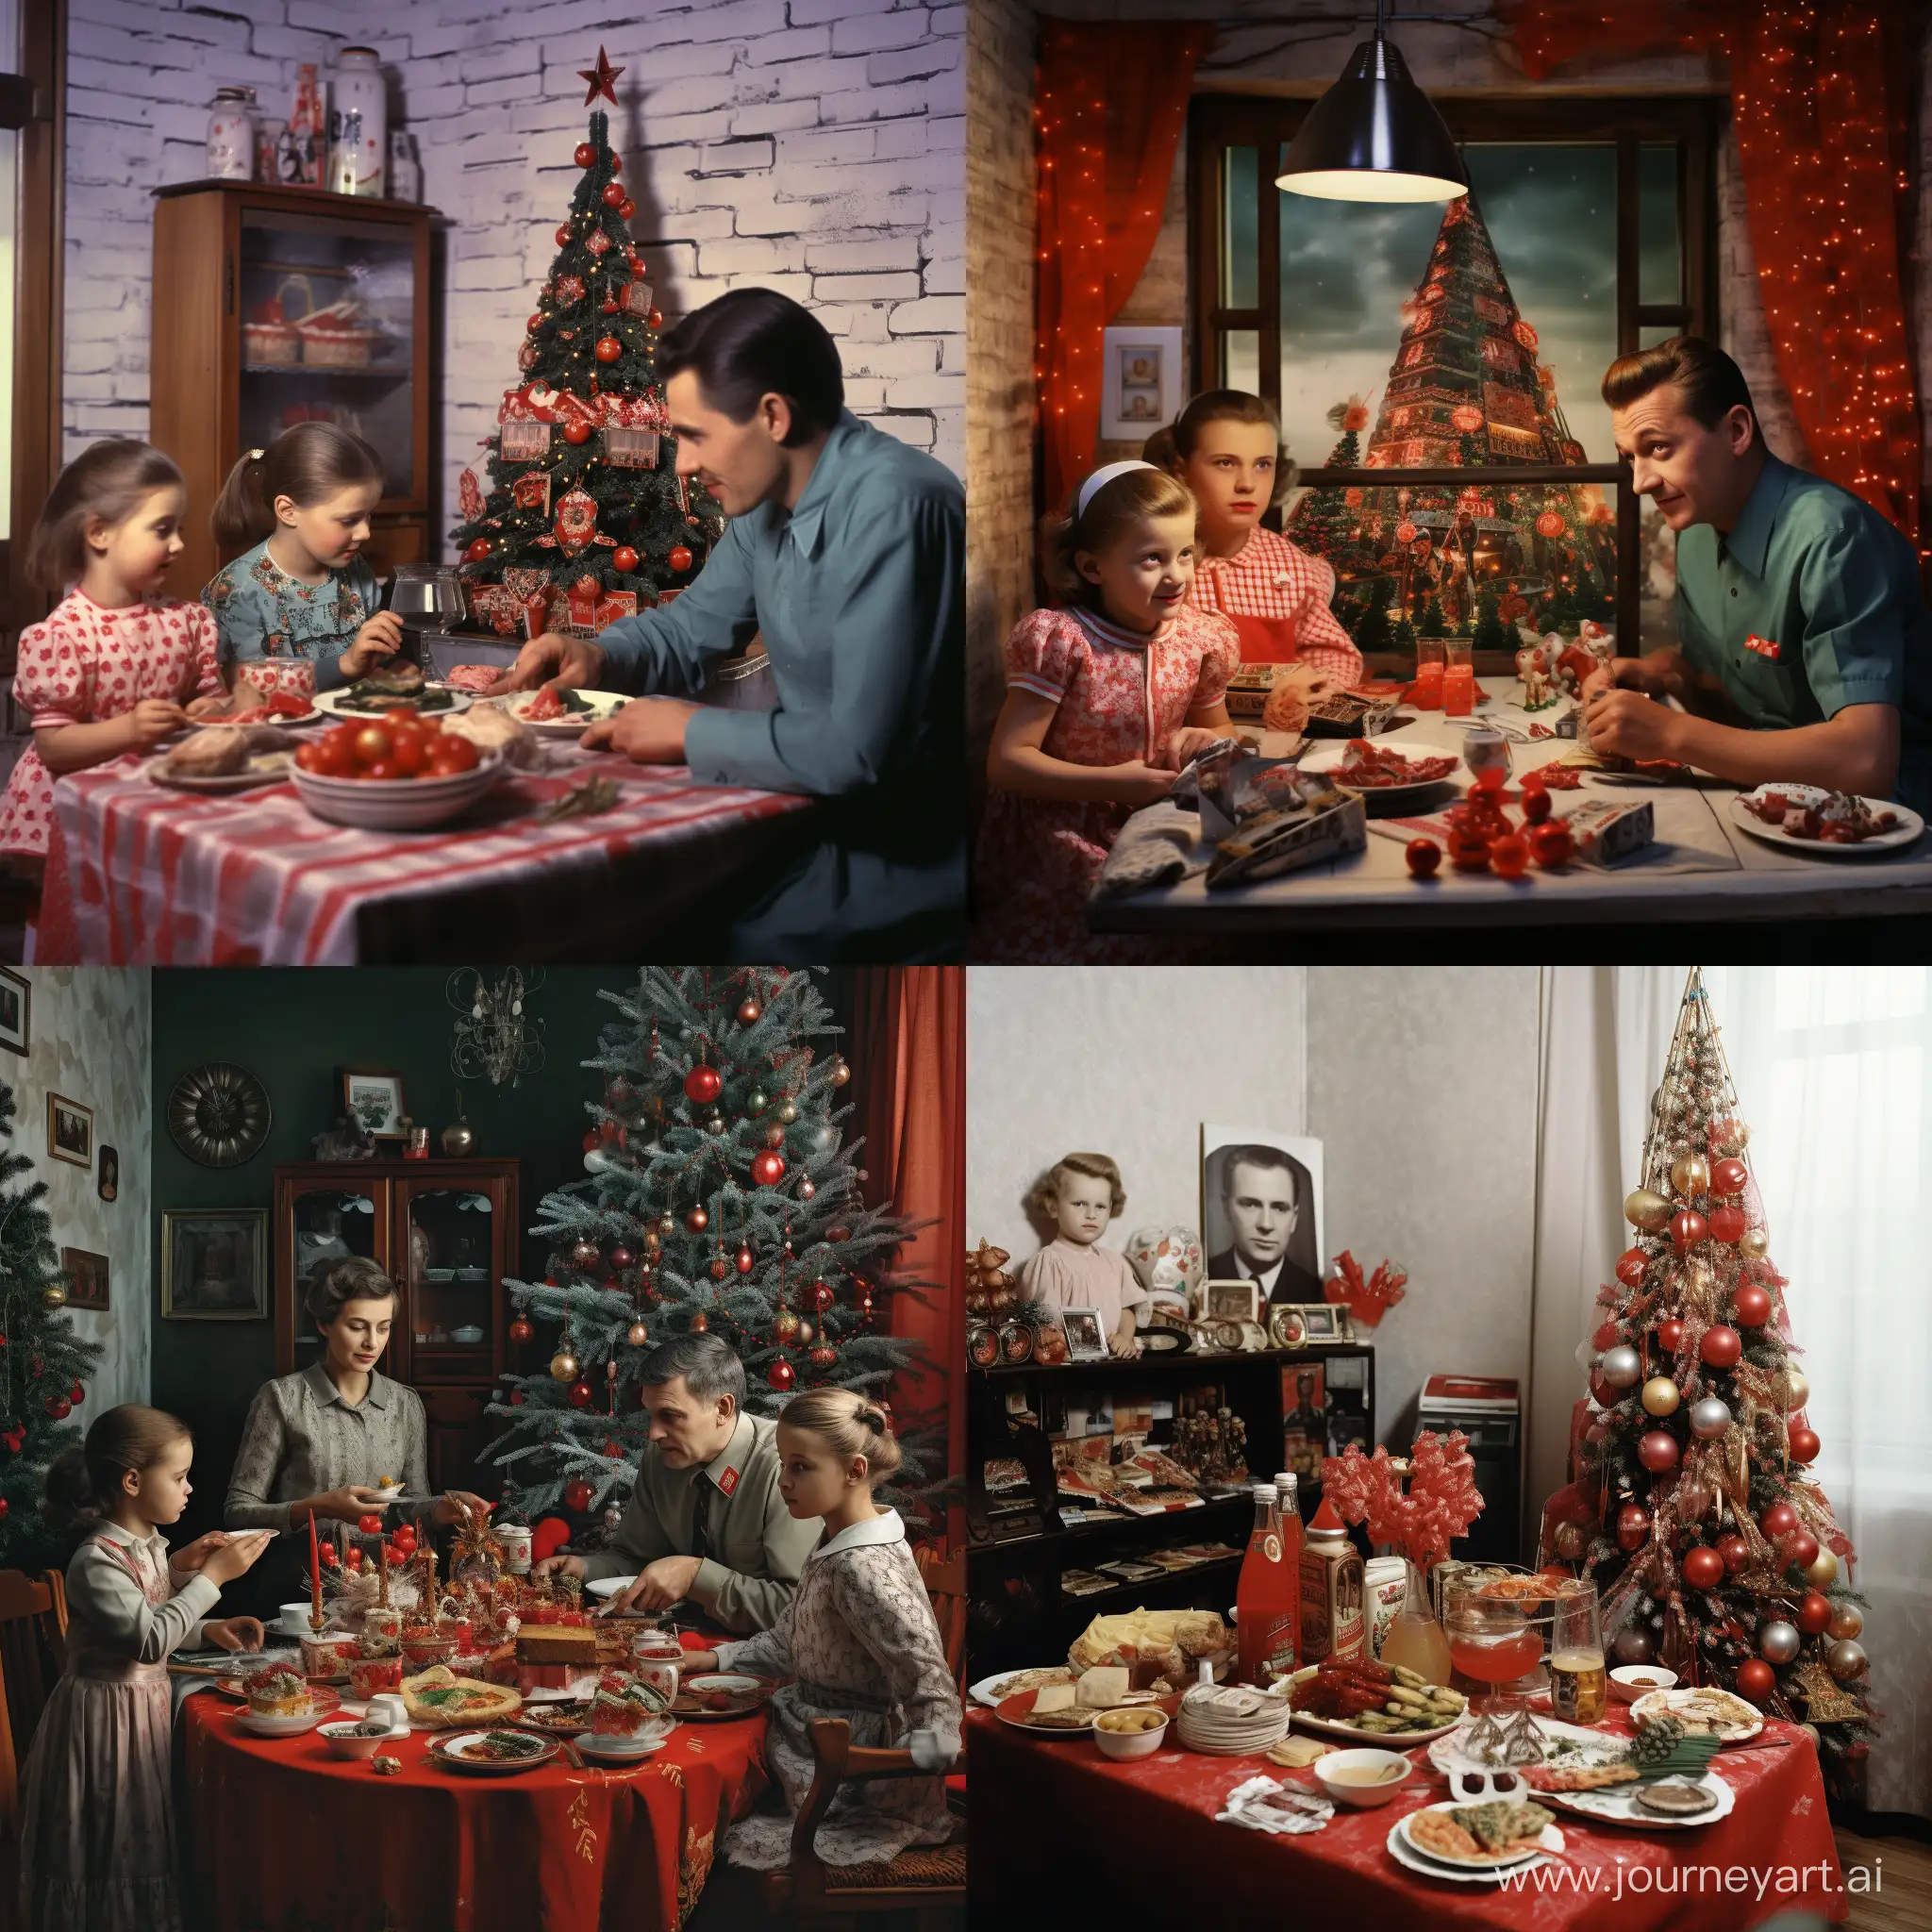 Встреча Нового года в Советском Союзе в кругу семьи, за праздничным столом с кушаньями, у новогодней украшенной ёлки и у телевизора, фотография, гиперреализм, высокое разрешение